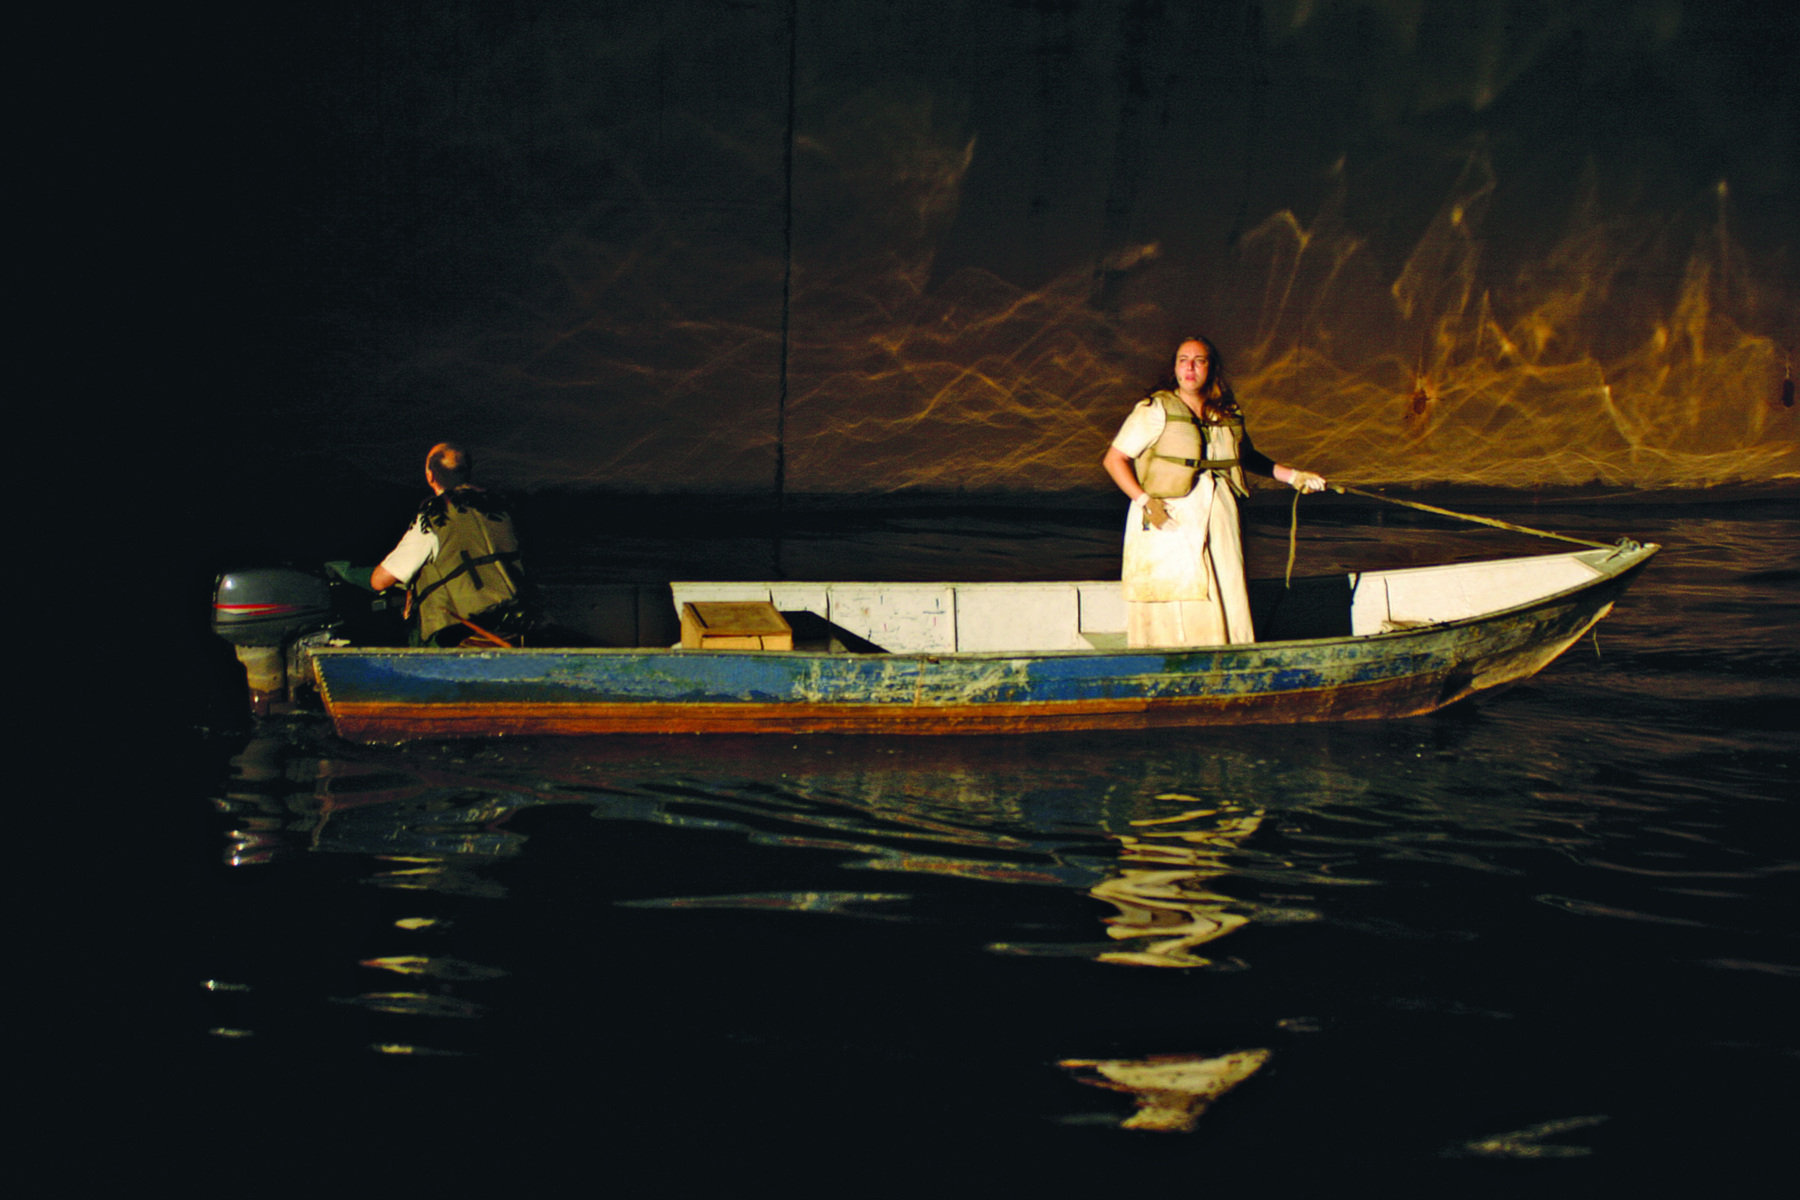 Fotografia. Um barco navegando em um rio com uma mulher de cabelos longos com um vestido branco, em pé, e um homem sentado de costas, responsável por guiar o barco.